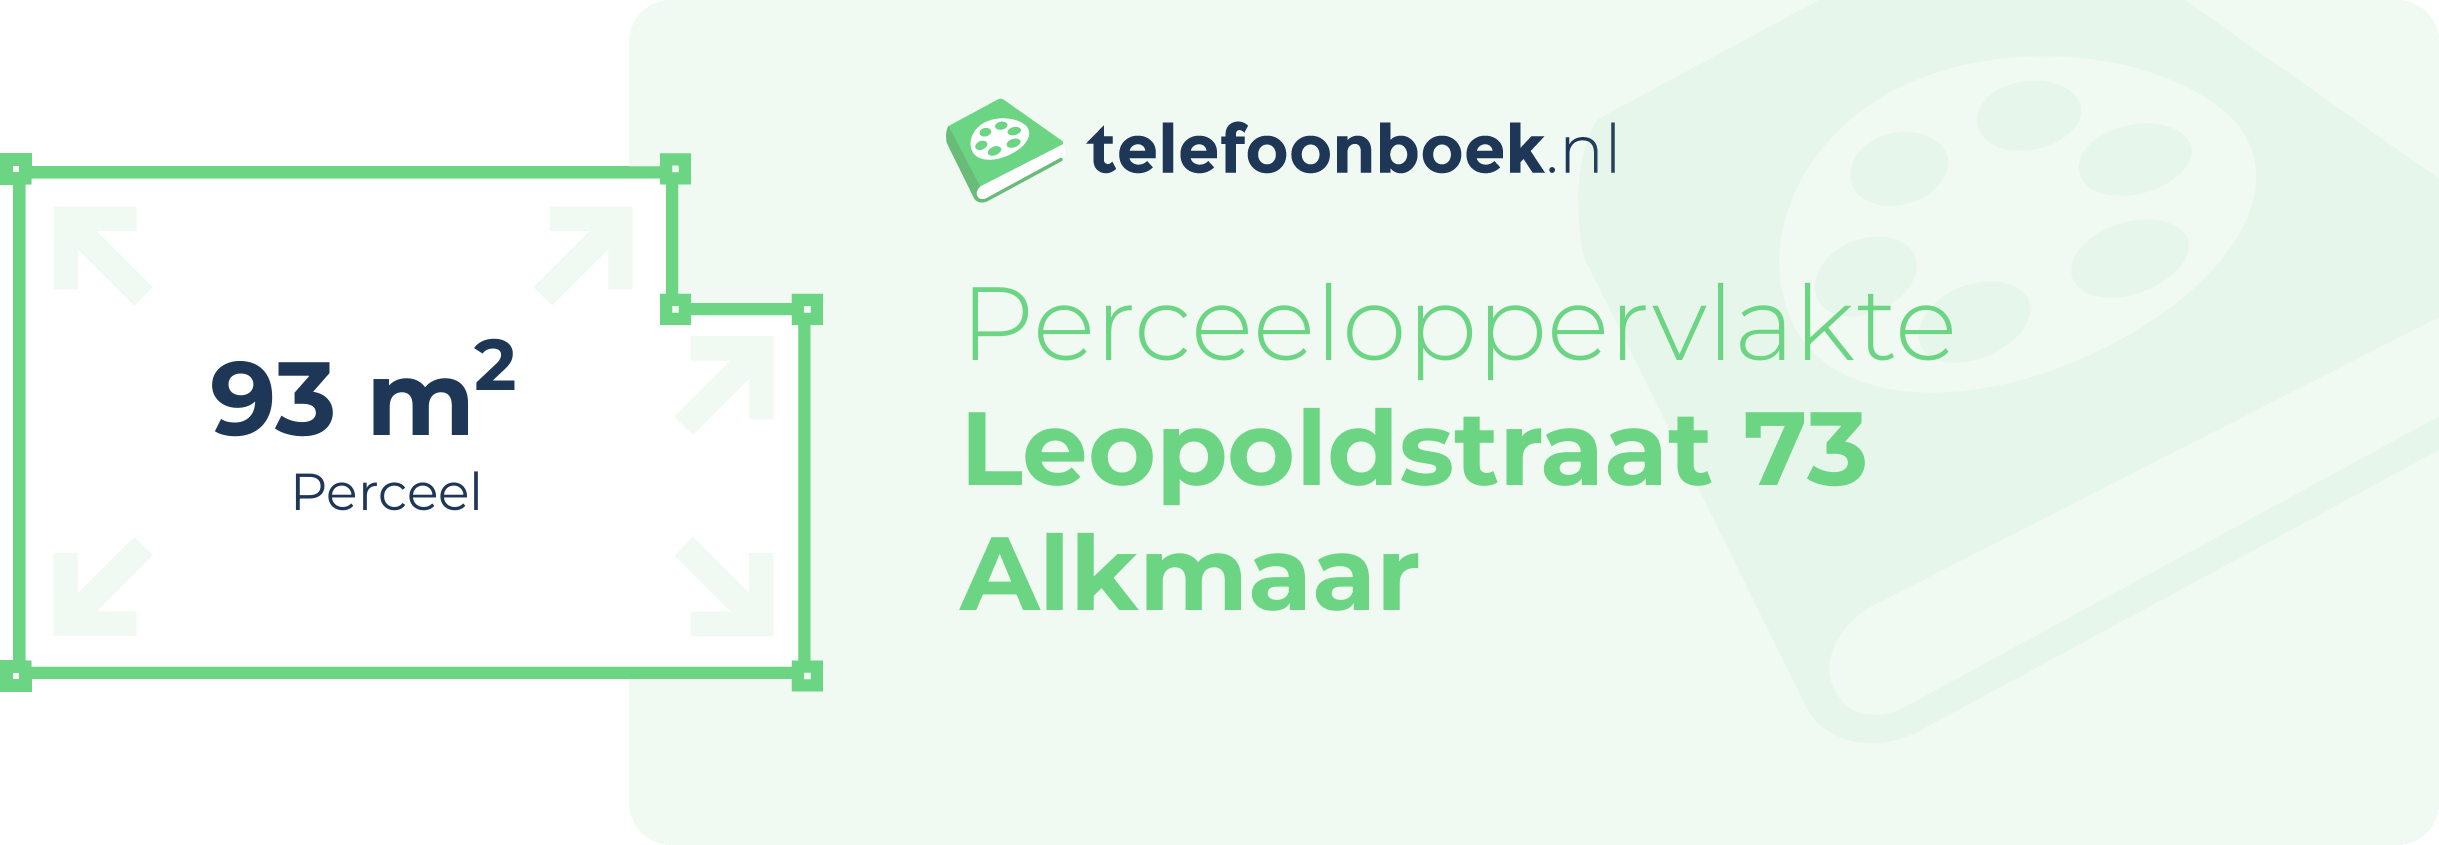 Perceeloppervlakte Leopoldstraat 73 Alkmaar